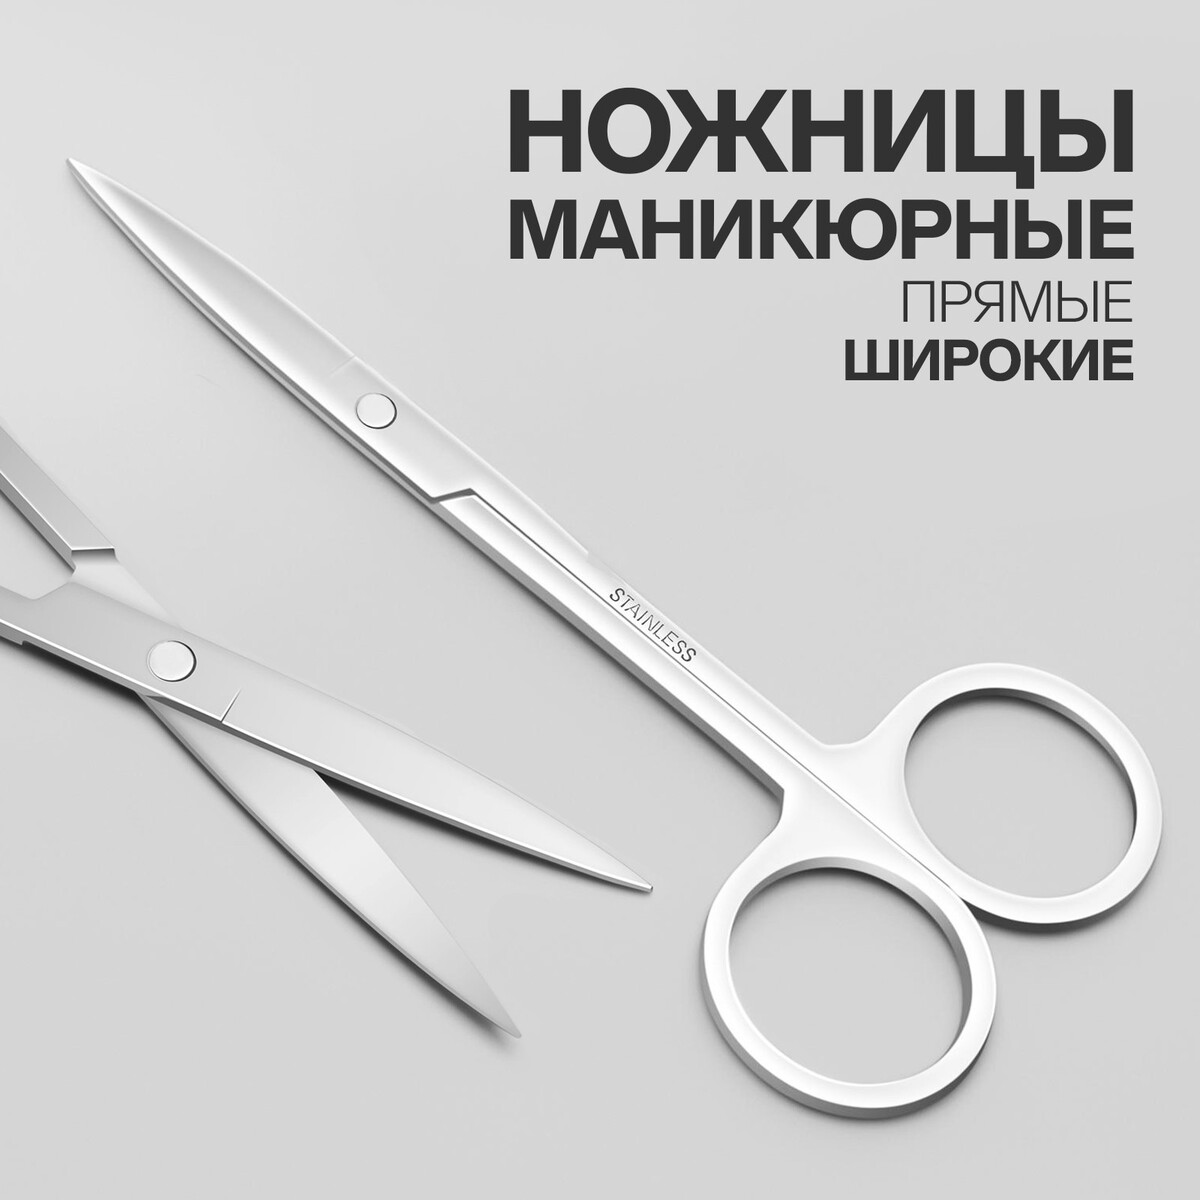 Ножницы маникюрные, прямые, широкие, 12 см, цвет серебристый ножницы безопасные прямые 9 см серебристый